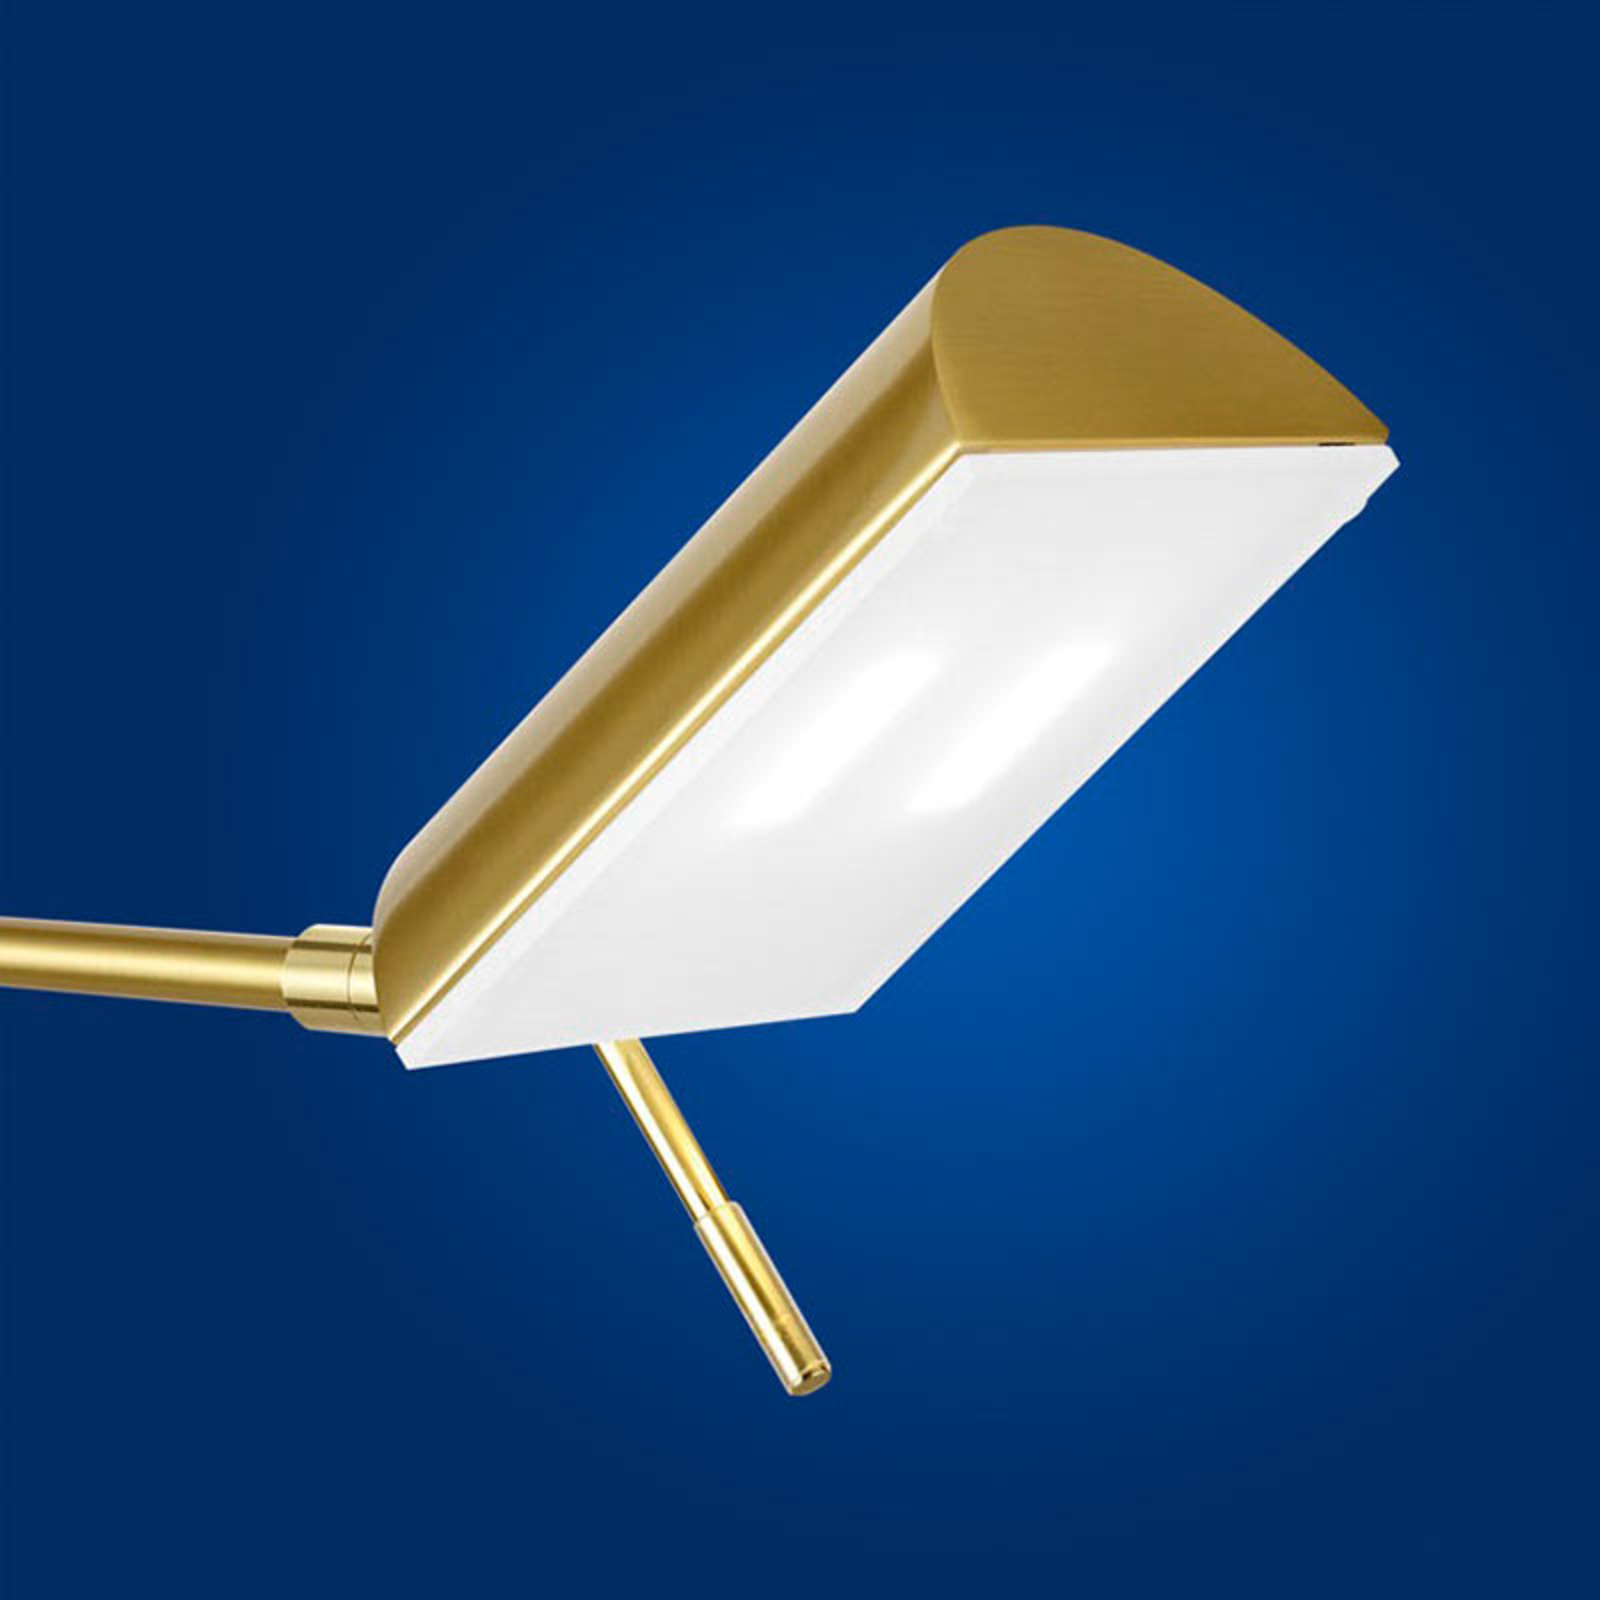 Graz LED floor lamp, brass